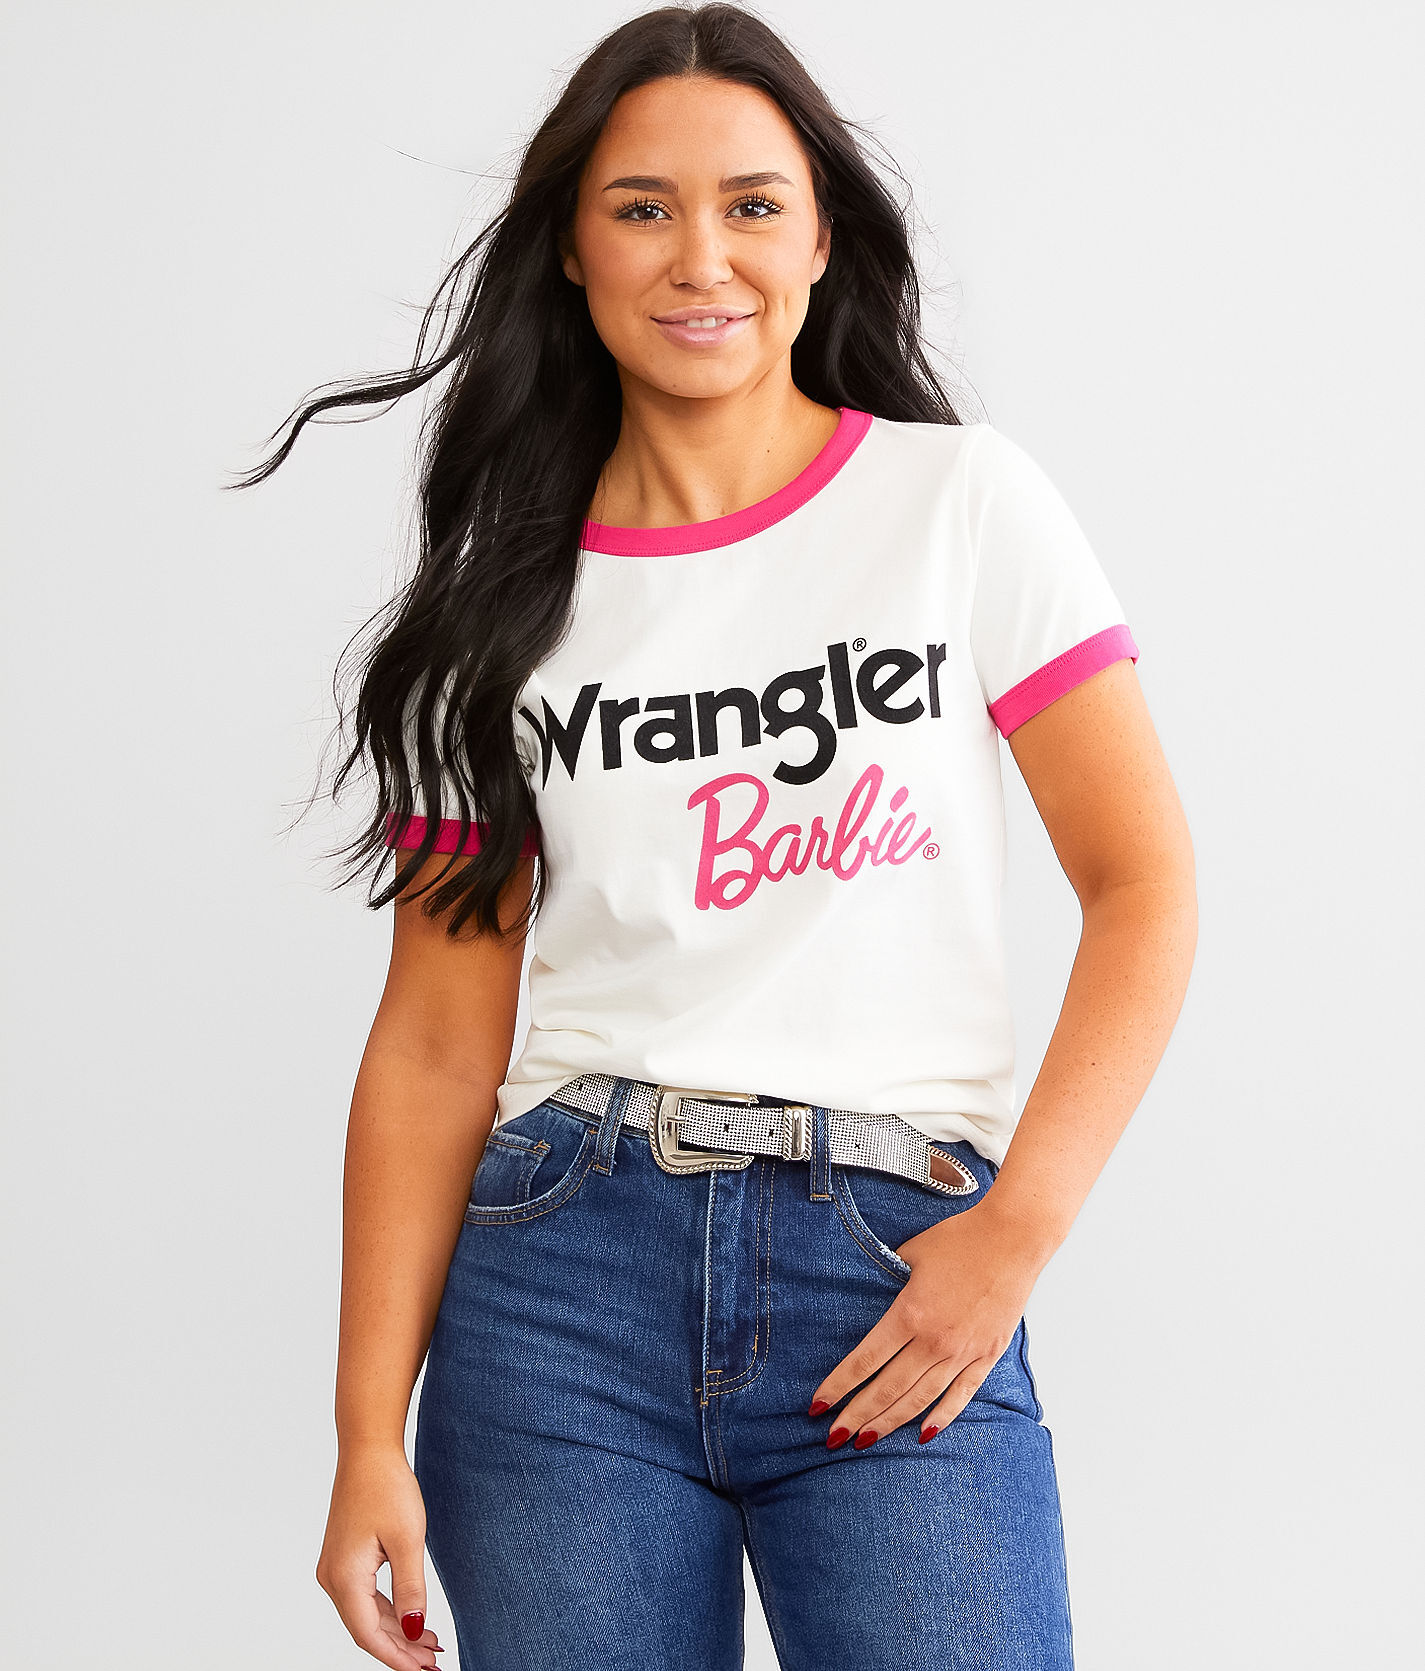 Wrangler Barbie Ringer T-Shirt  - White - female - Size: Medium